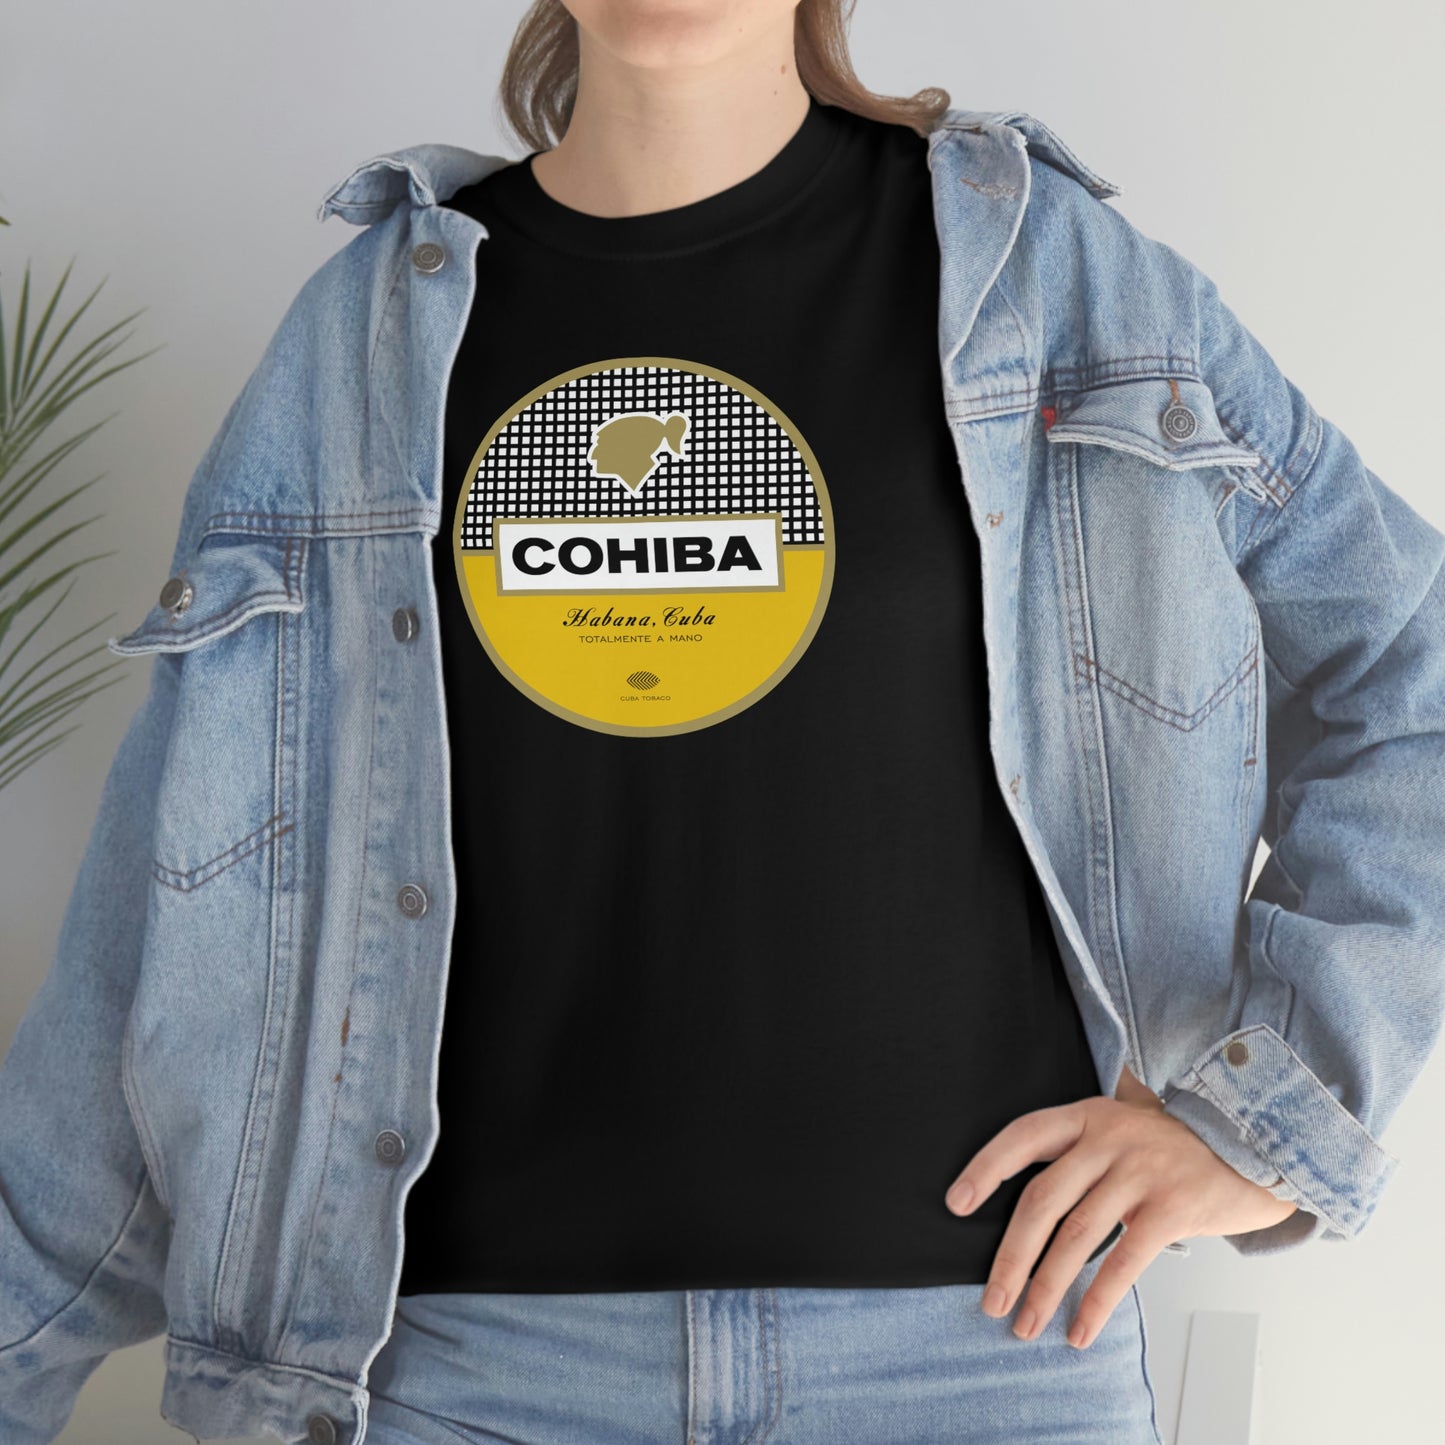 Cohiba T-Shirt